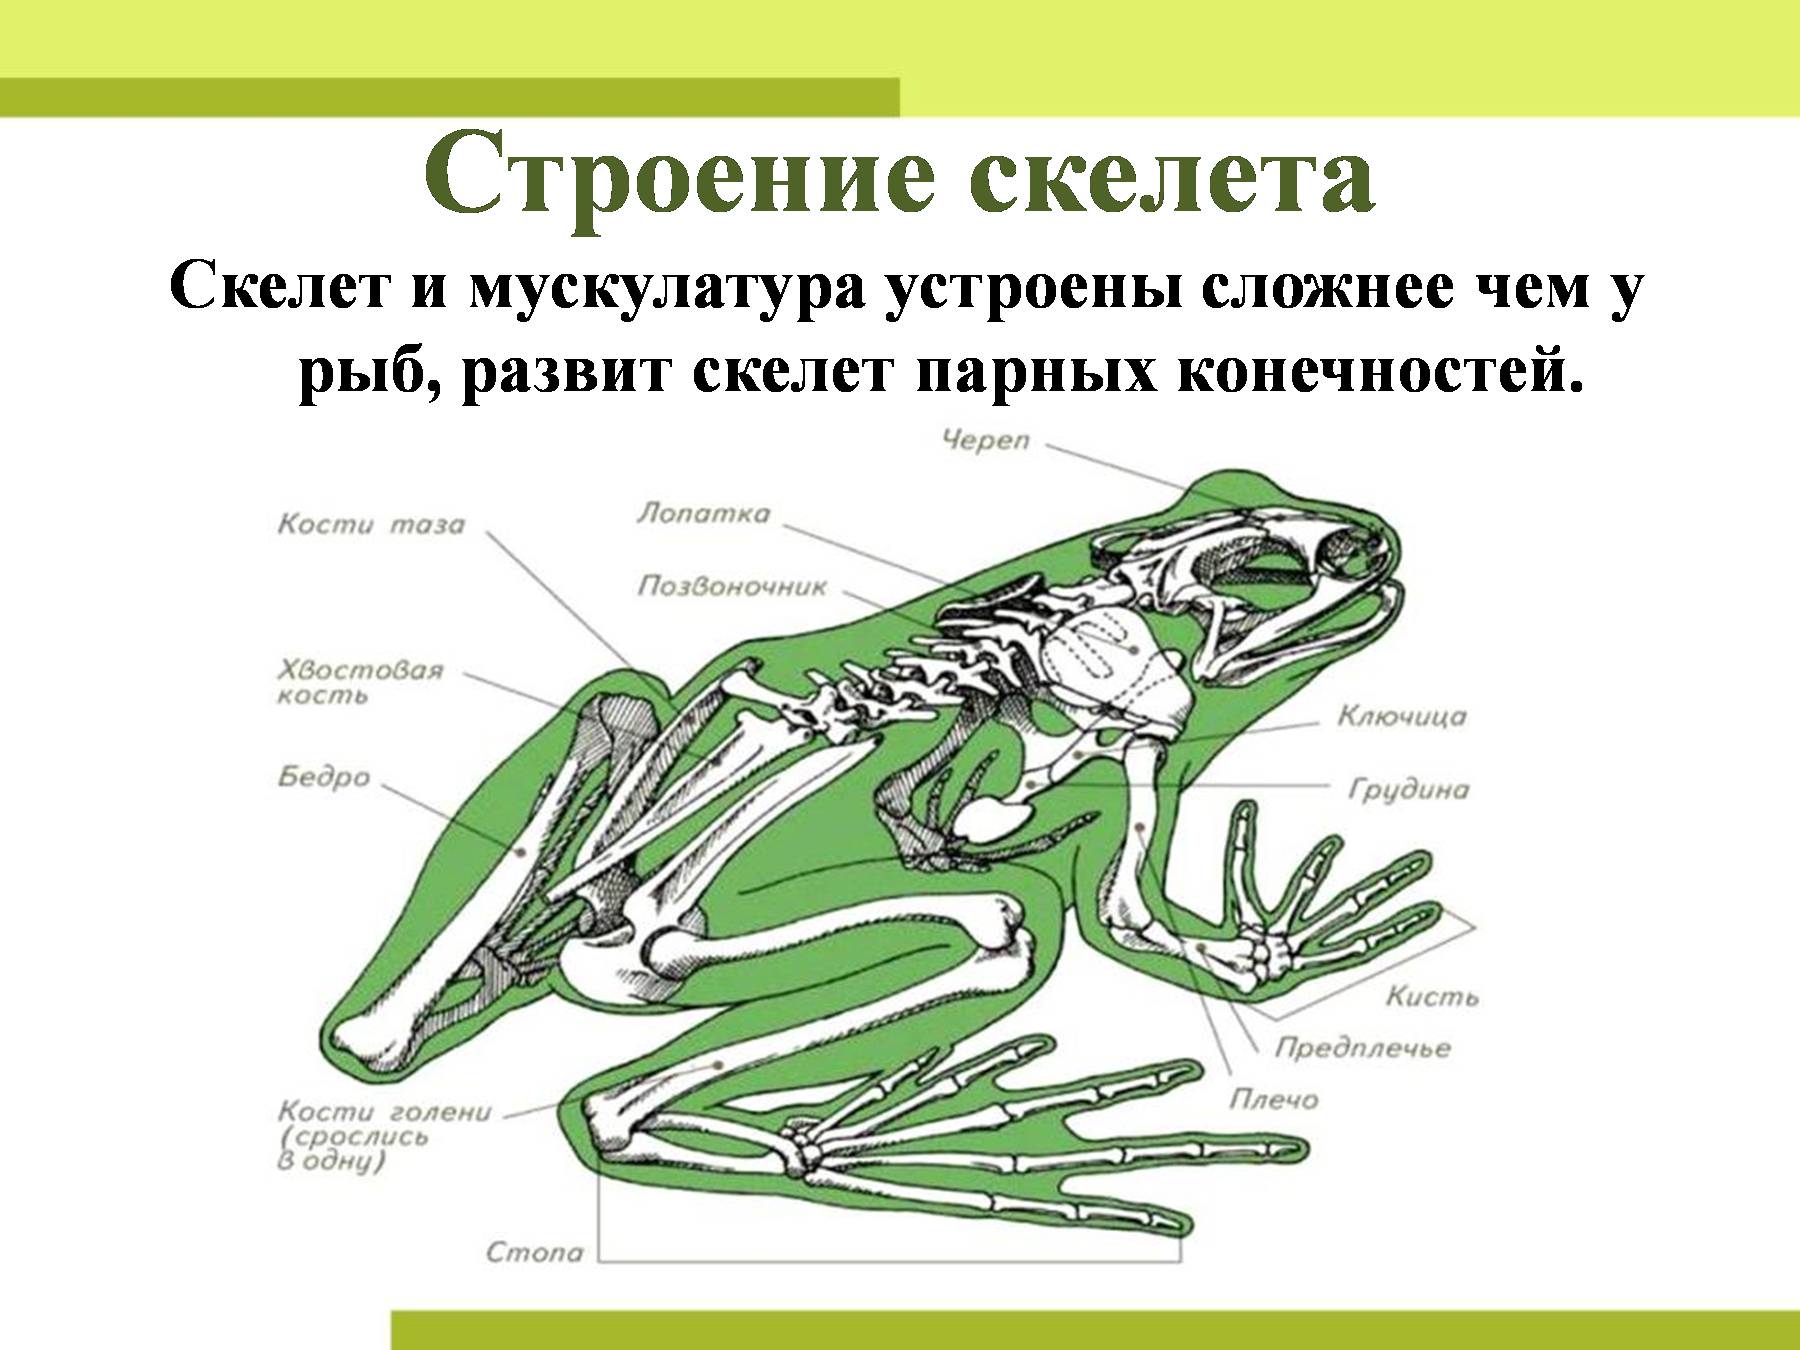 Скелет поясов конечностей лягушки. Скелет конечностей амфибий. Скелет конечностей земноводных. Строение скелета амфибий. Земноводные строение скелета задних конечностей.